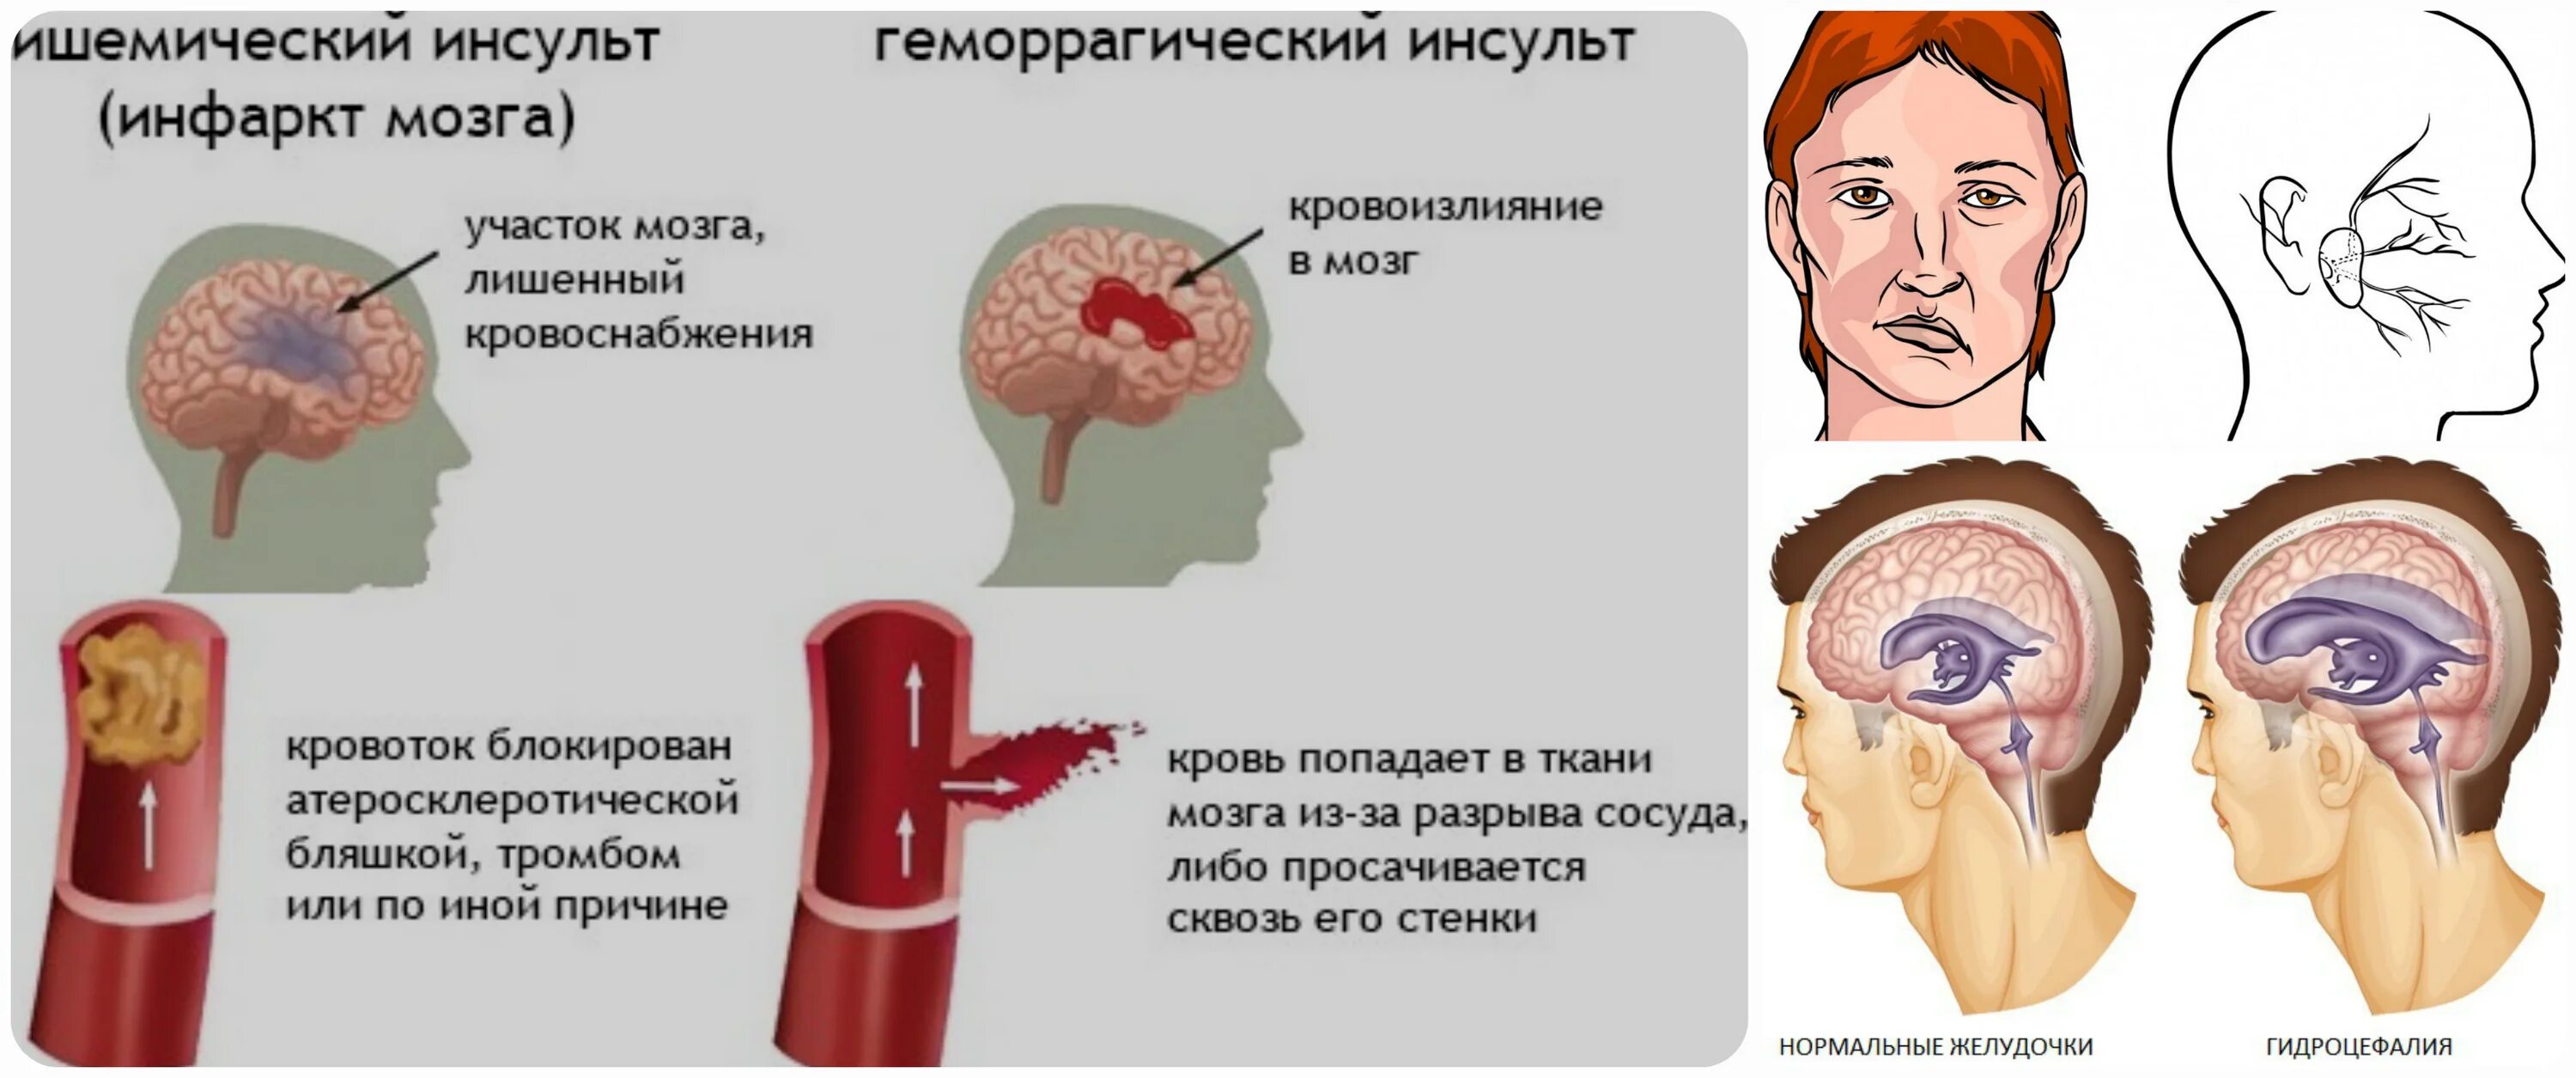 Ковид инсульт. Геморрагический инсульт. Геморрагический инсульт мозг. Геморрагический инсульт кровоизлияние в мозг. Мозг человека при инсульте.